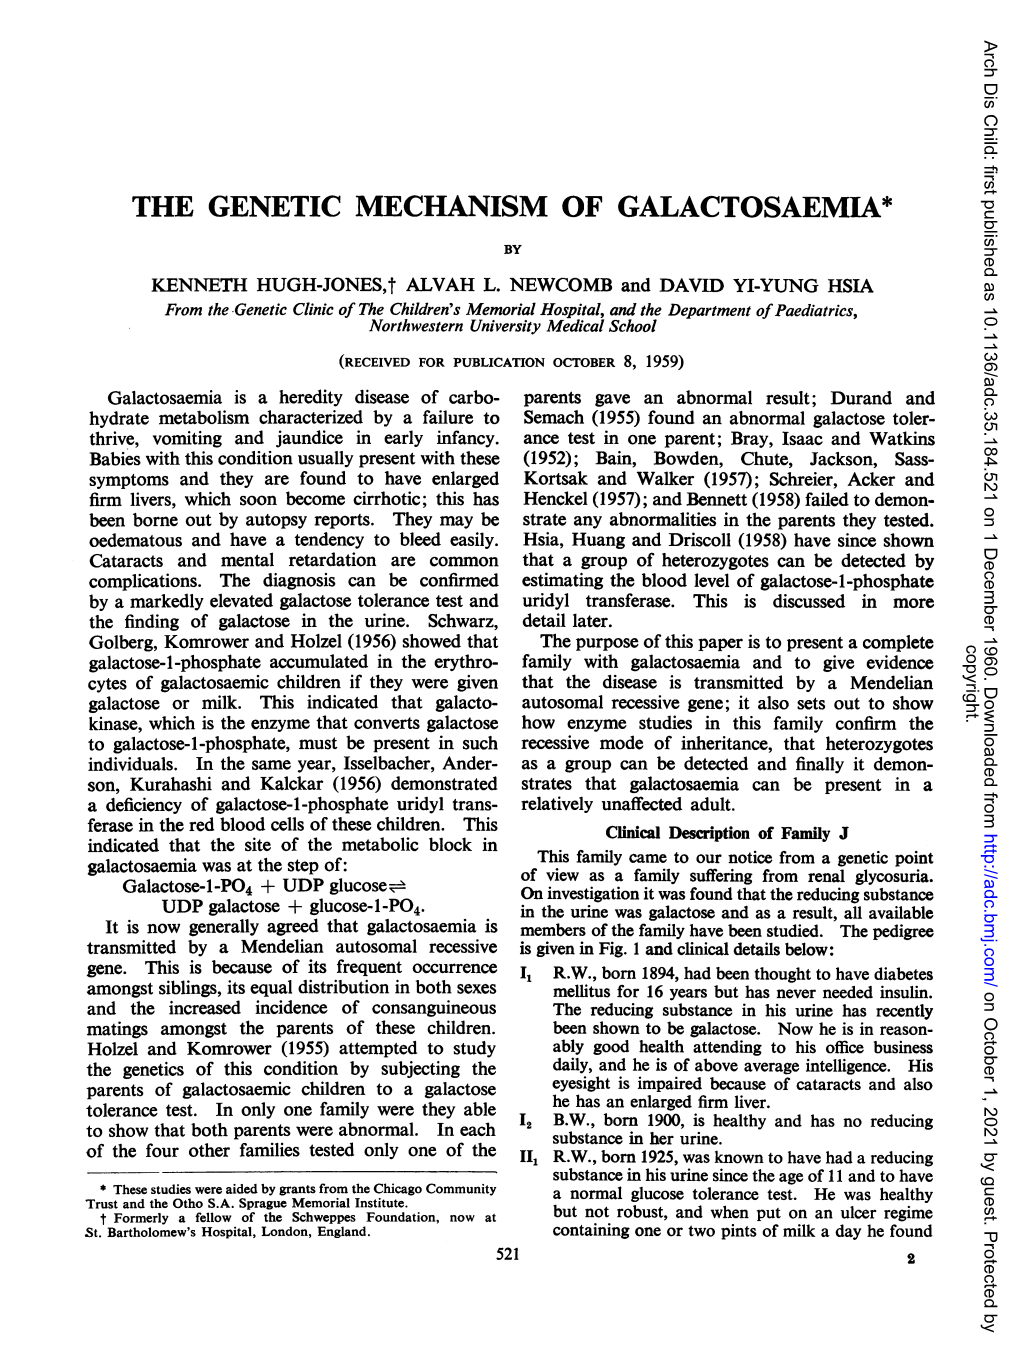 The Genetic Mechanism of Galactosaemia*